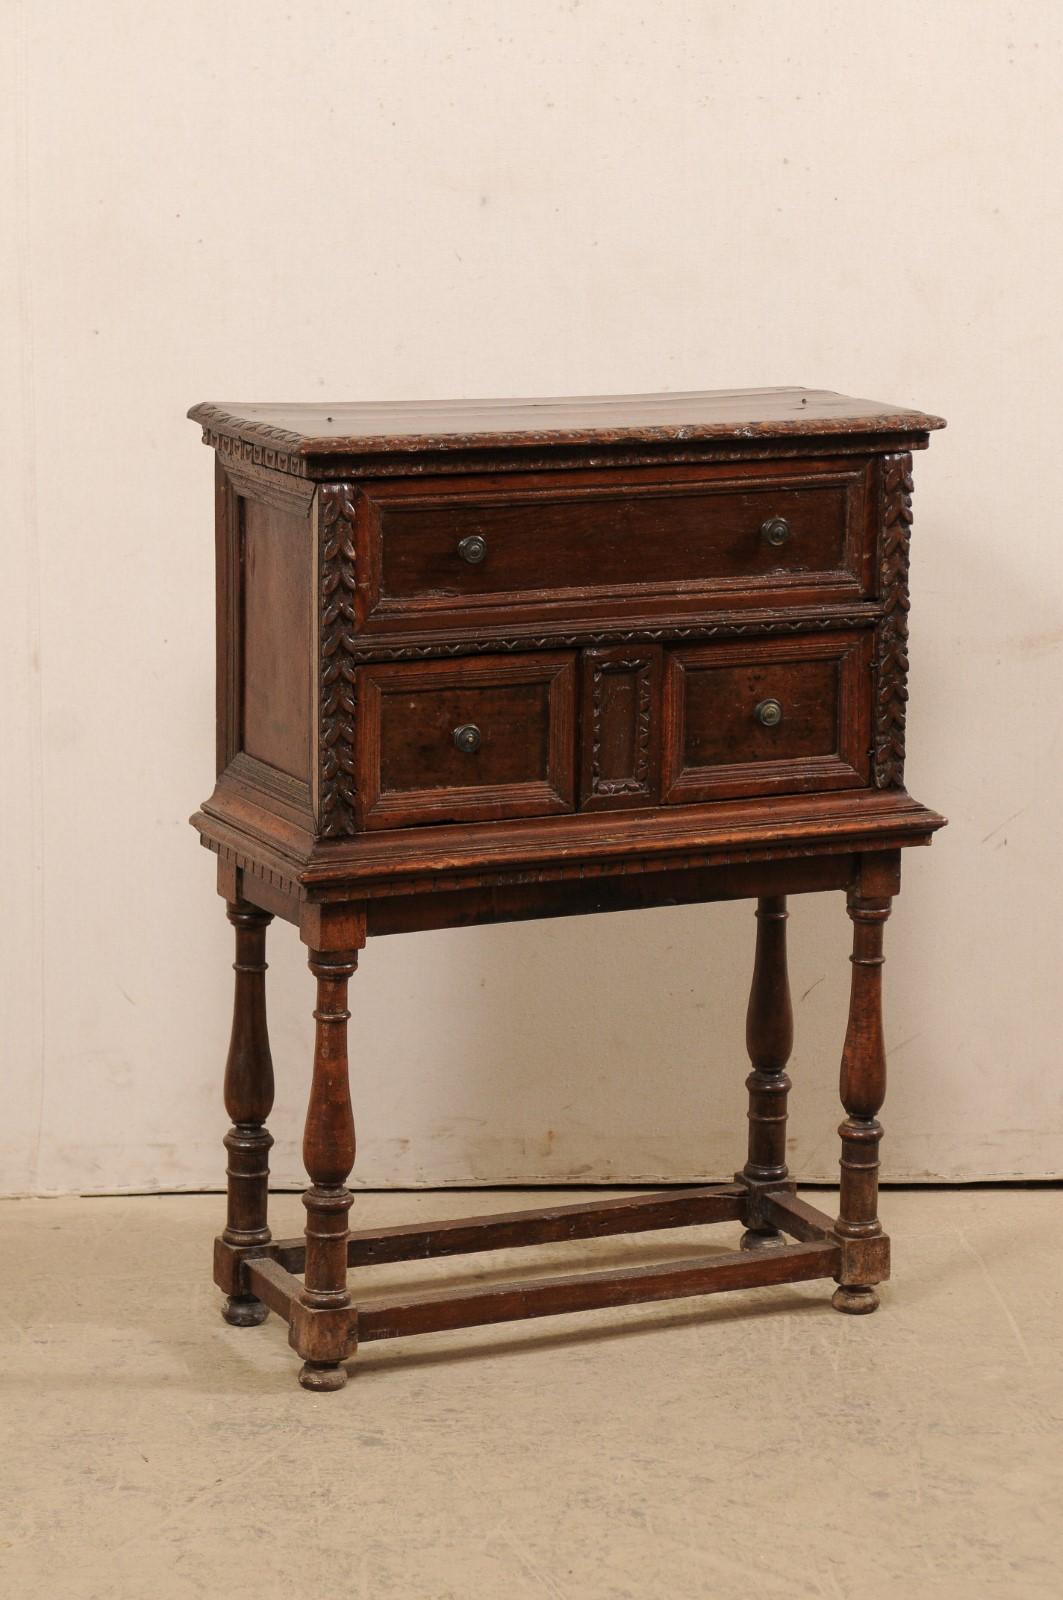 Bureau de majordome italien du XVIIIe siècle, sur socle plus tardif. Ce meuble ancien d'Italie a l'apparence d'une commode à trois tiroirs à première vue. Cependant, en y regardant de plus près, on s'aperçoit que le 